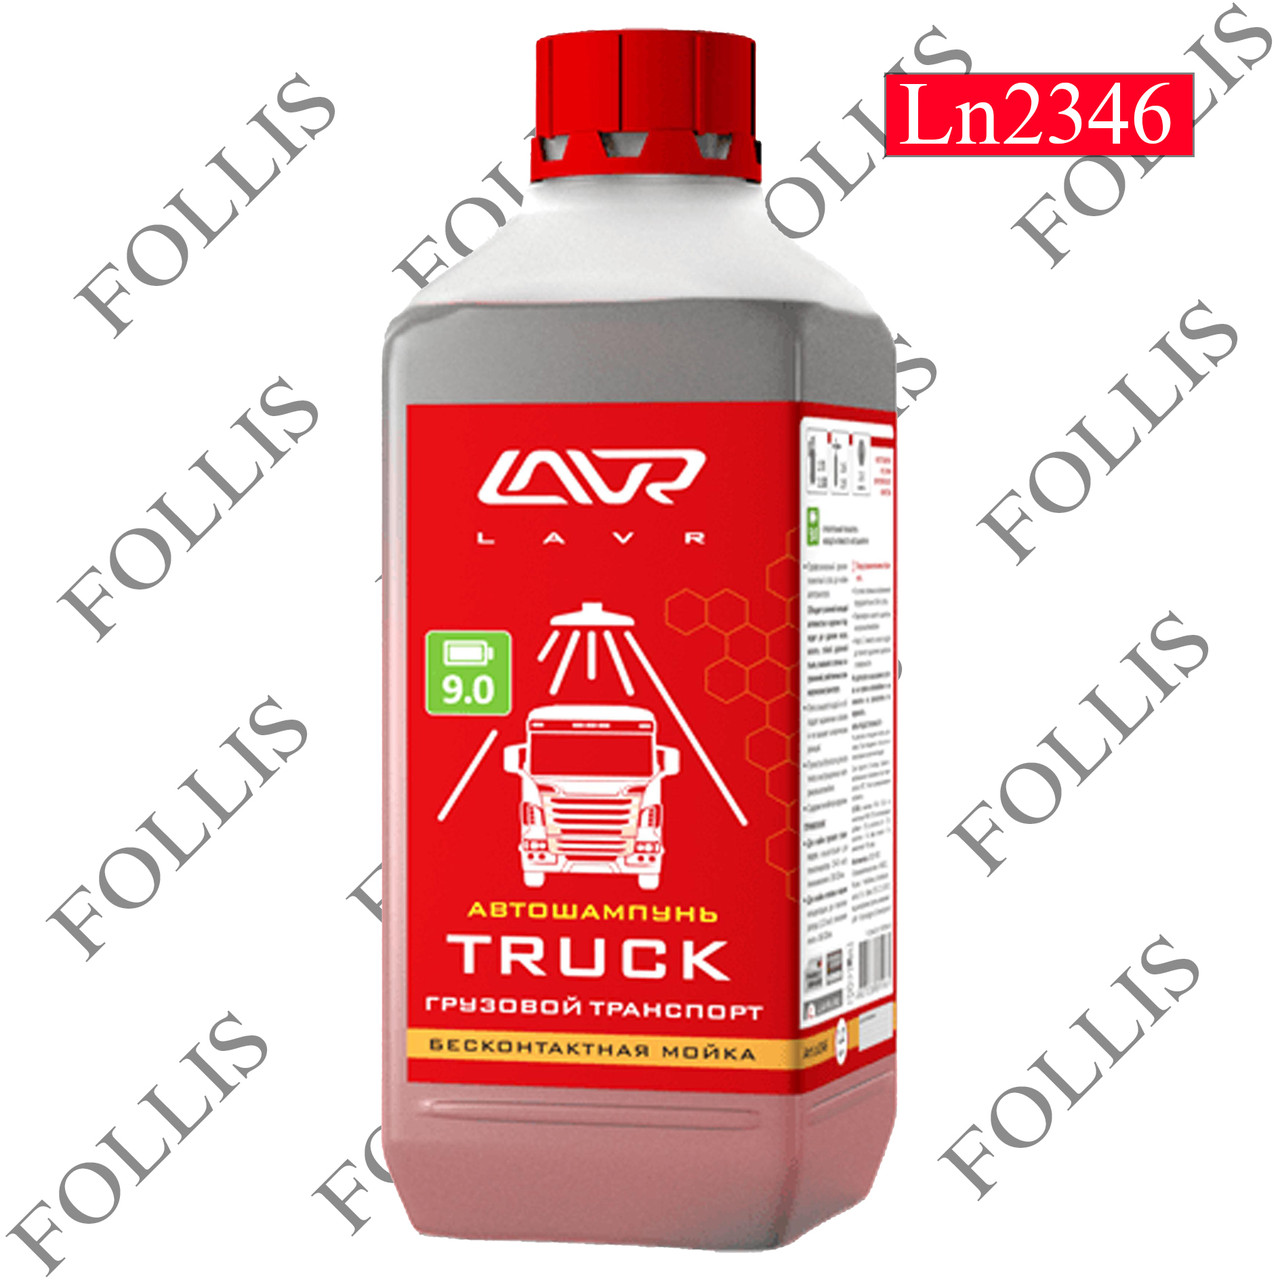 Автошампунь для бесконтактной мойки "TRUCK" для грузового транспорта Auto Shampoo TRUCK 1,2 кг